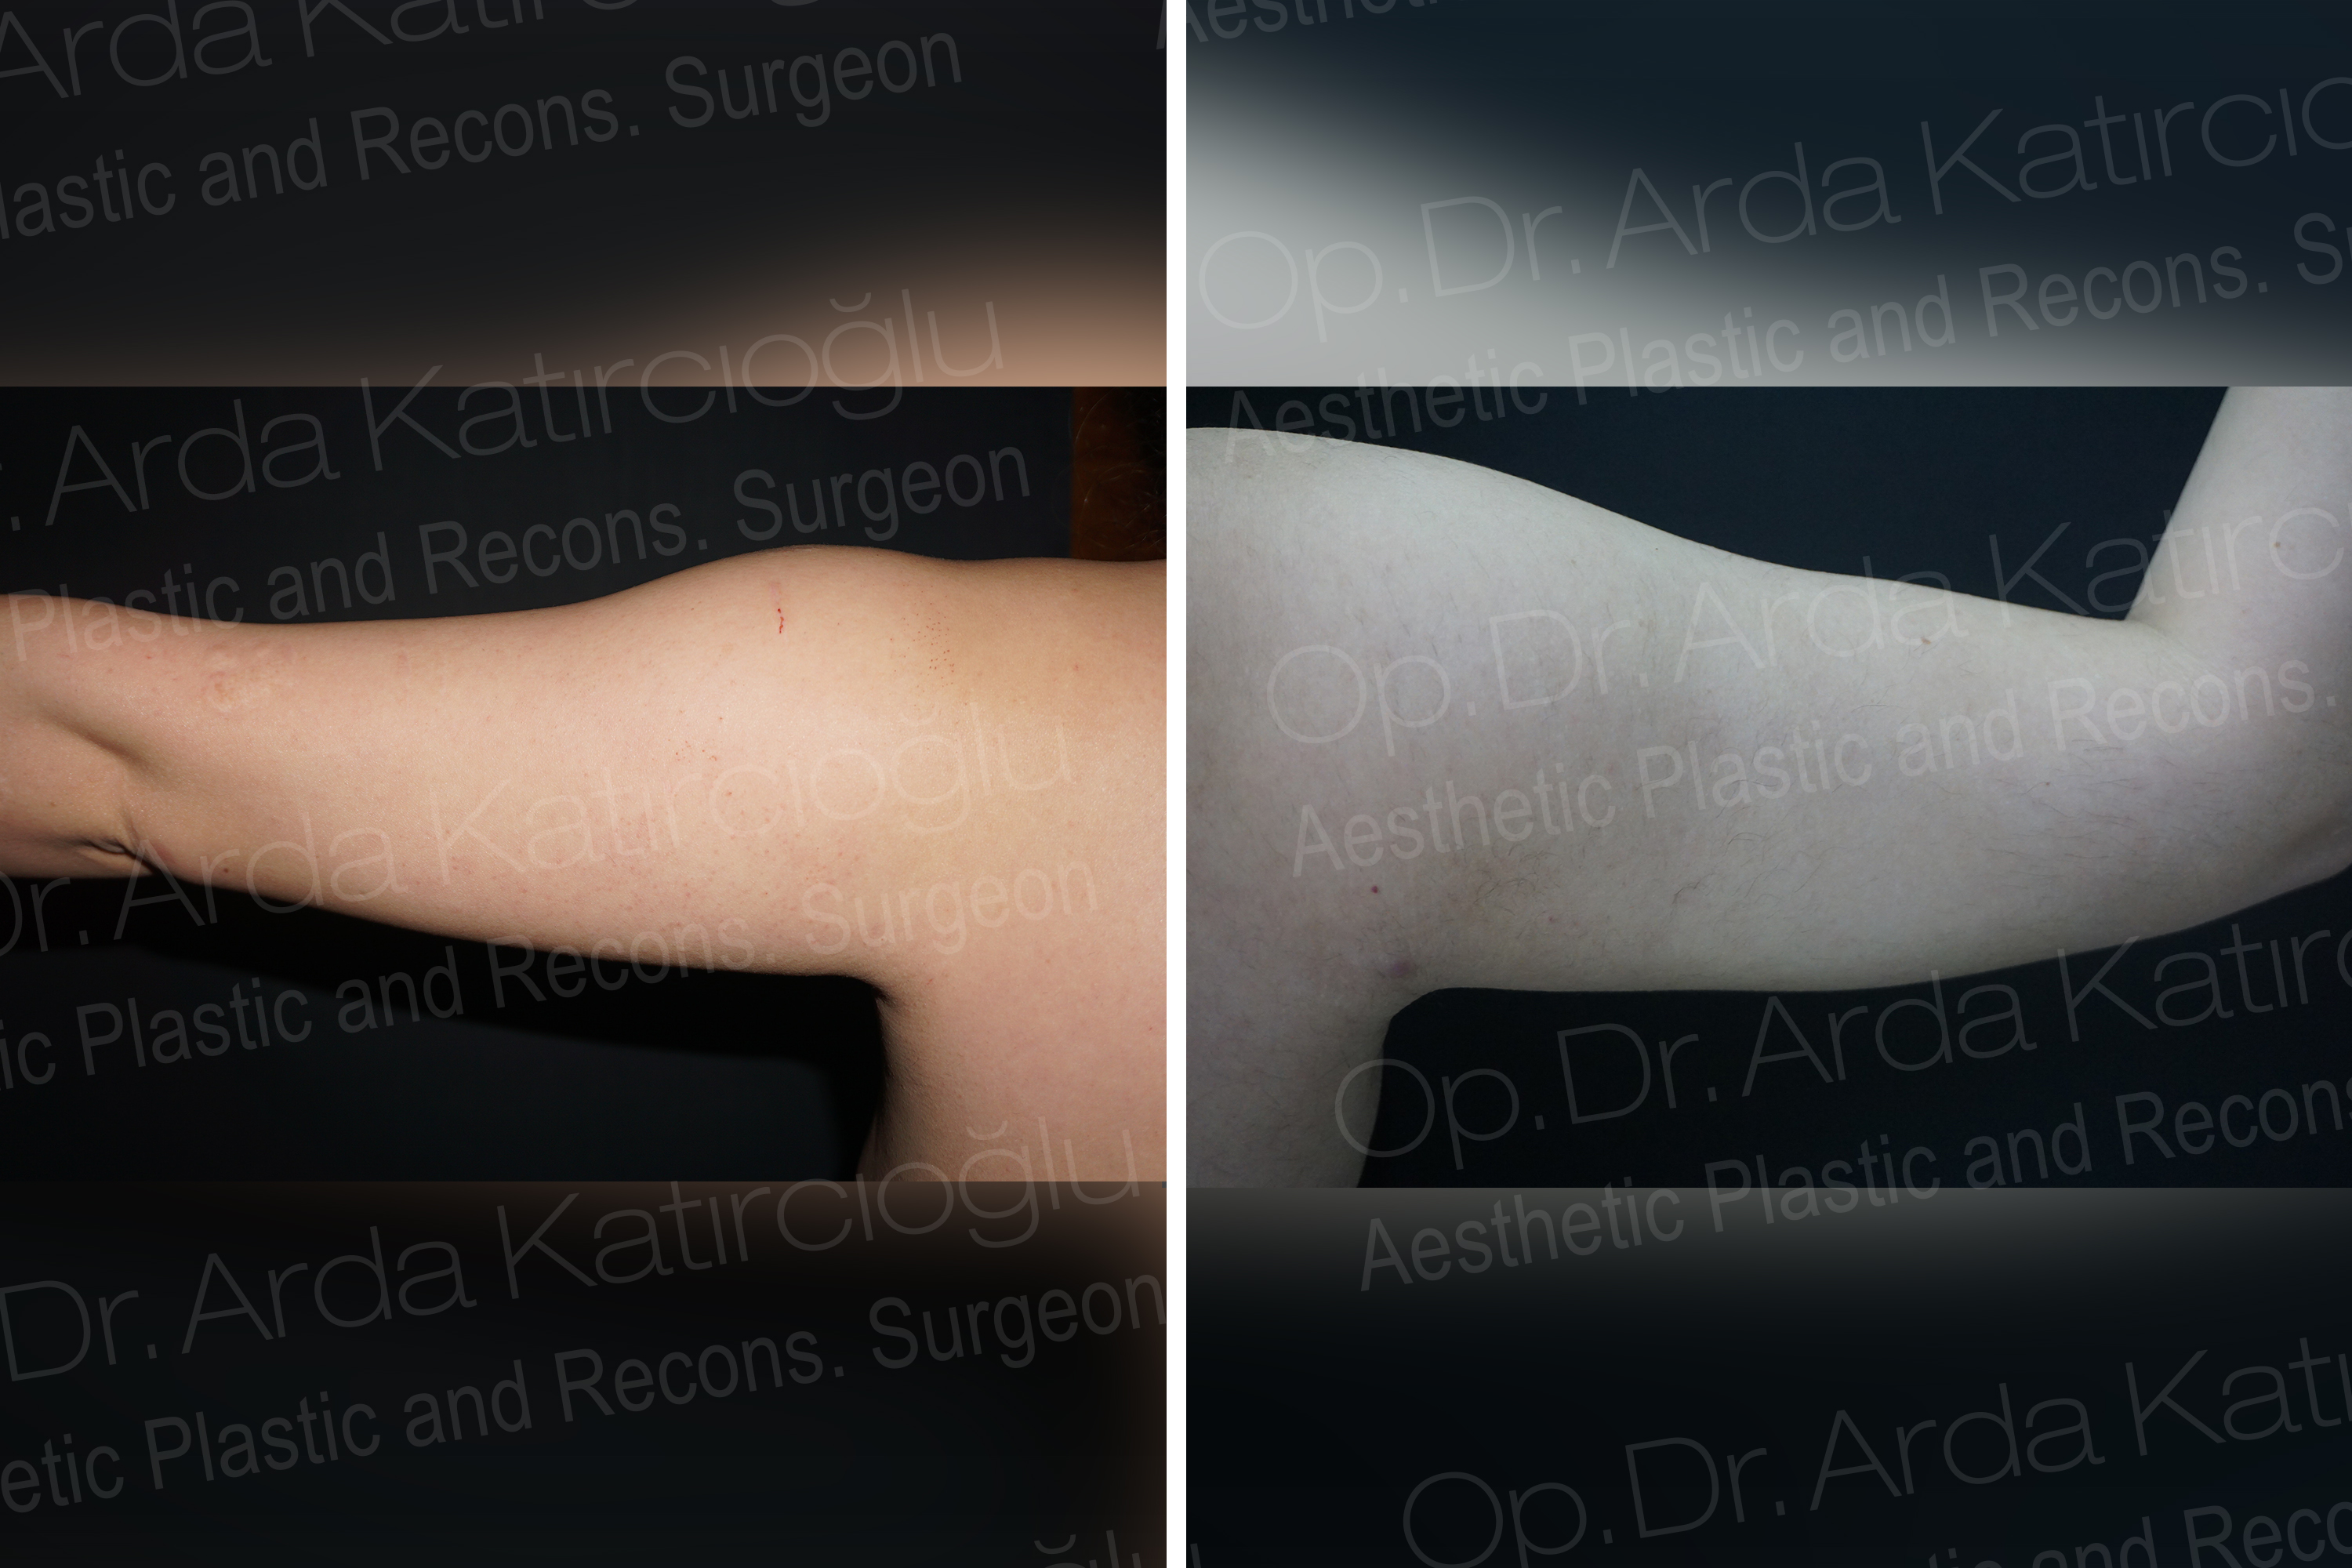 Miaplast Esthetic Surgery Op. Dr. Arda Katırcıoğlu